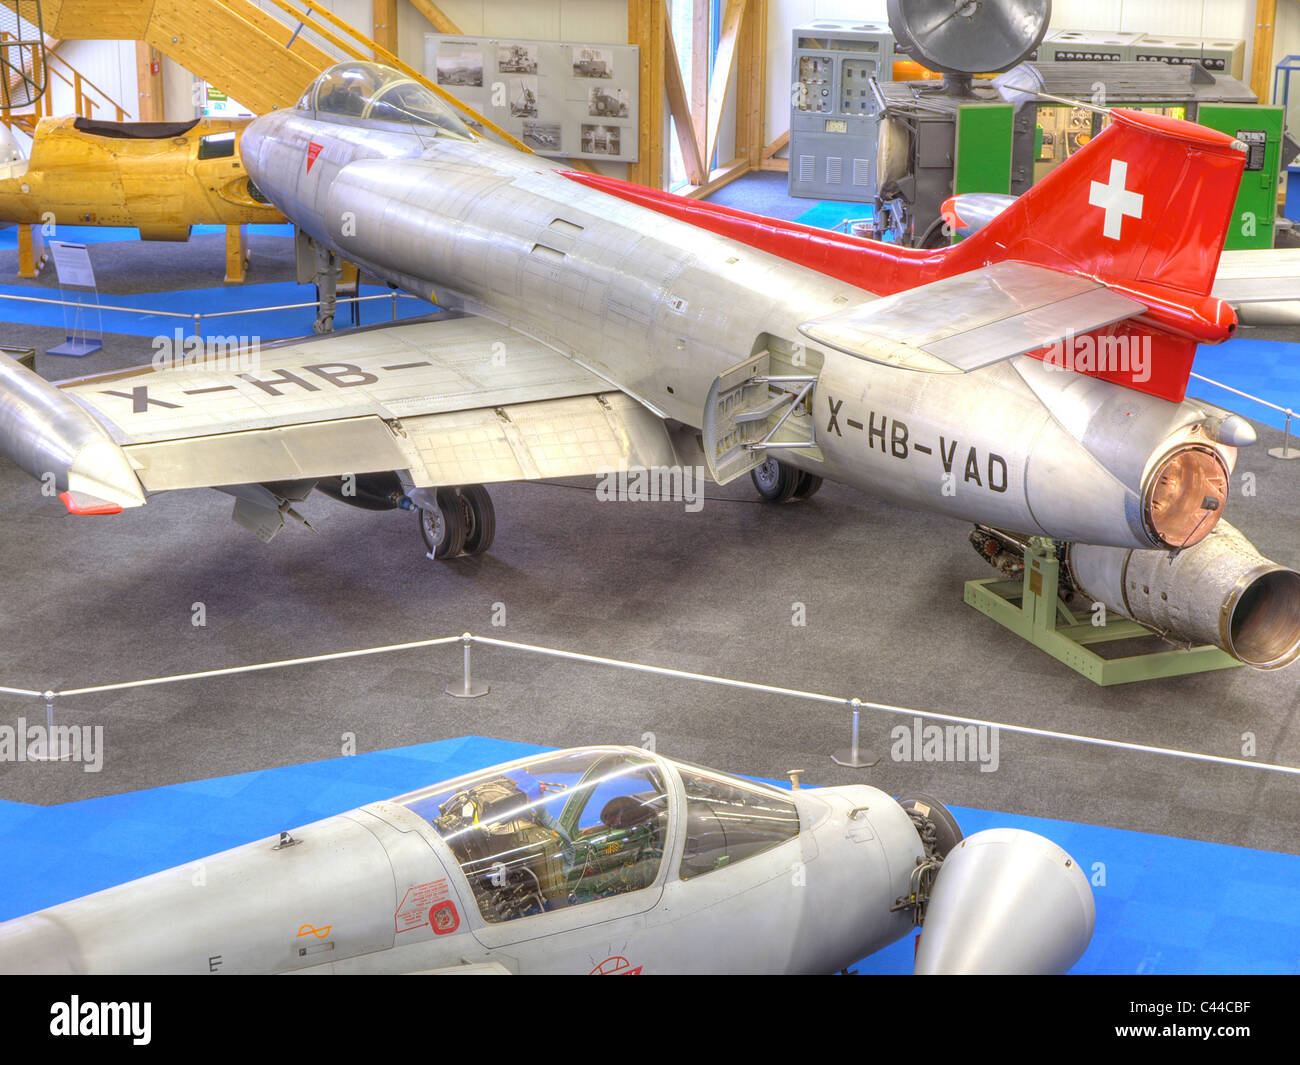 Aviones, Airman's Museum, aldea Duben, museo, cantón de Zurich, Suiza, aviones militares, veteranos, aviación Foto de stock